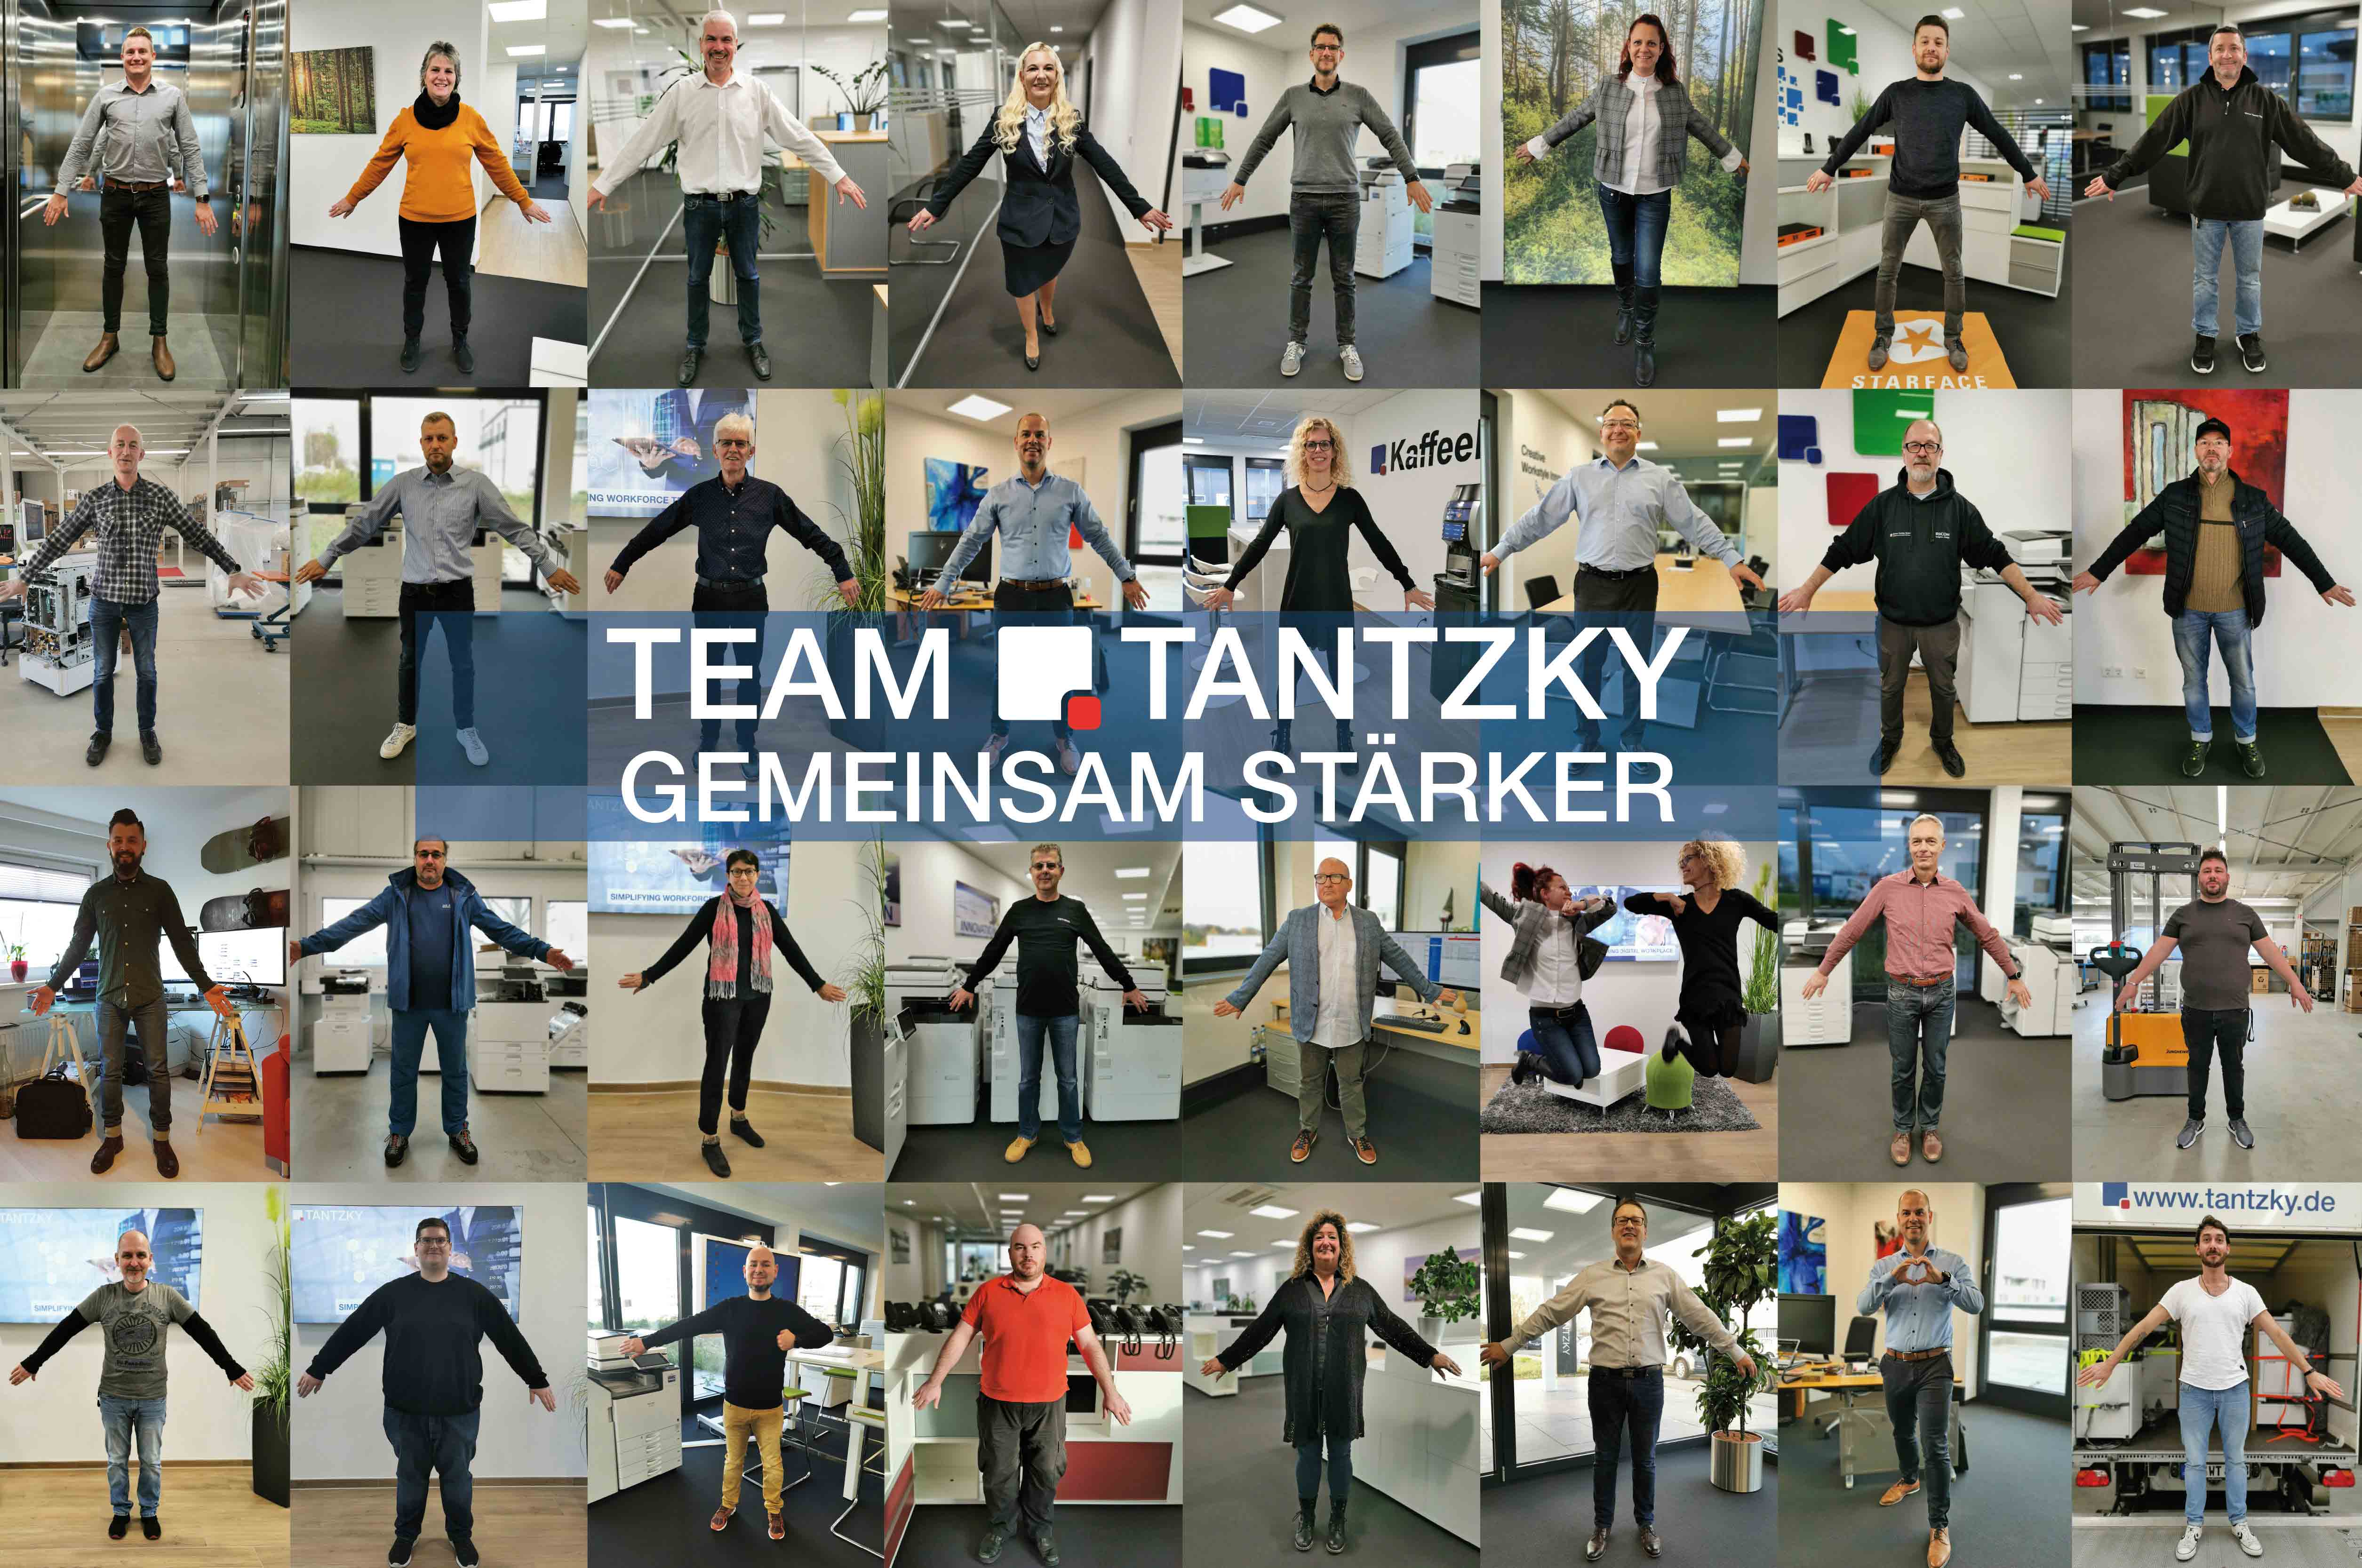 Alle Mitarbeiter von Tantzky sind auf Einzelaufnahmen zu sehen. Fotocollage Händehaltend präsentiert sich das Team TANTZKY geschlossen.